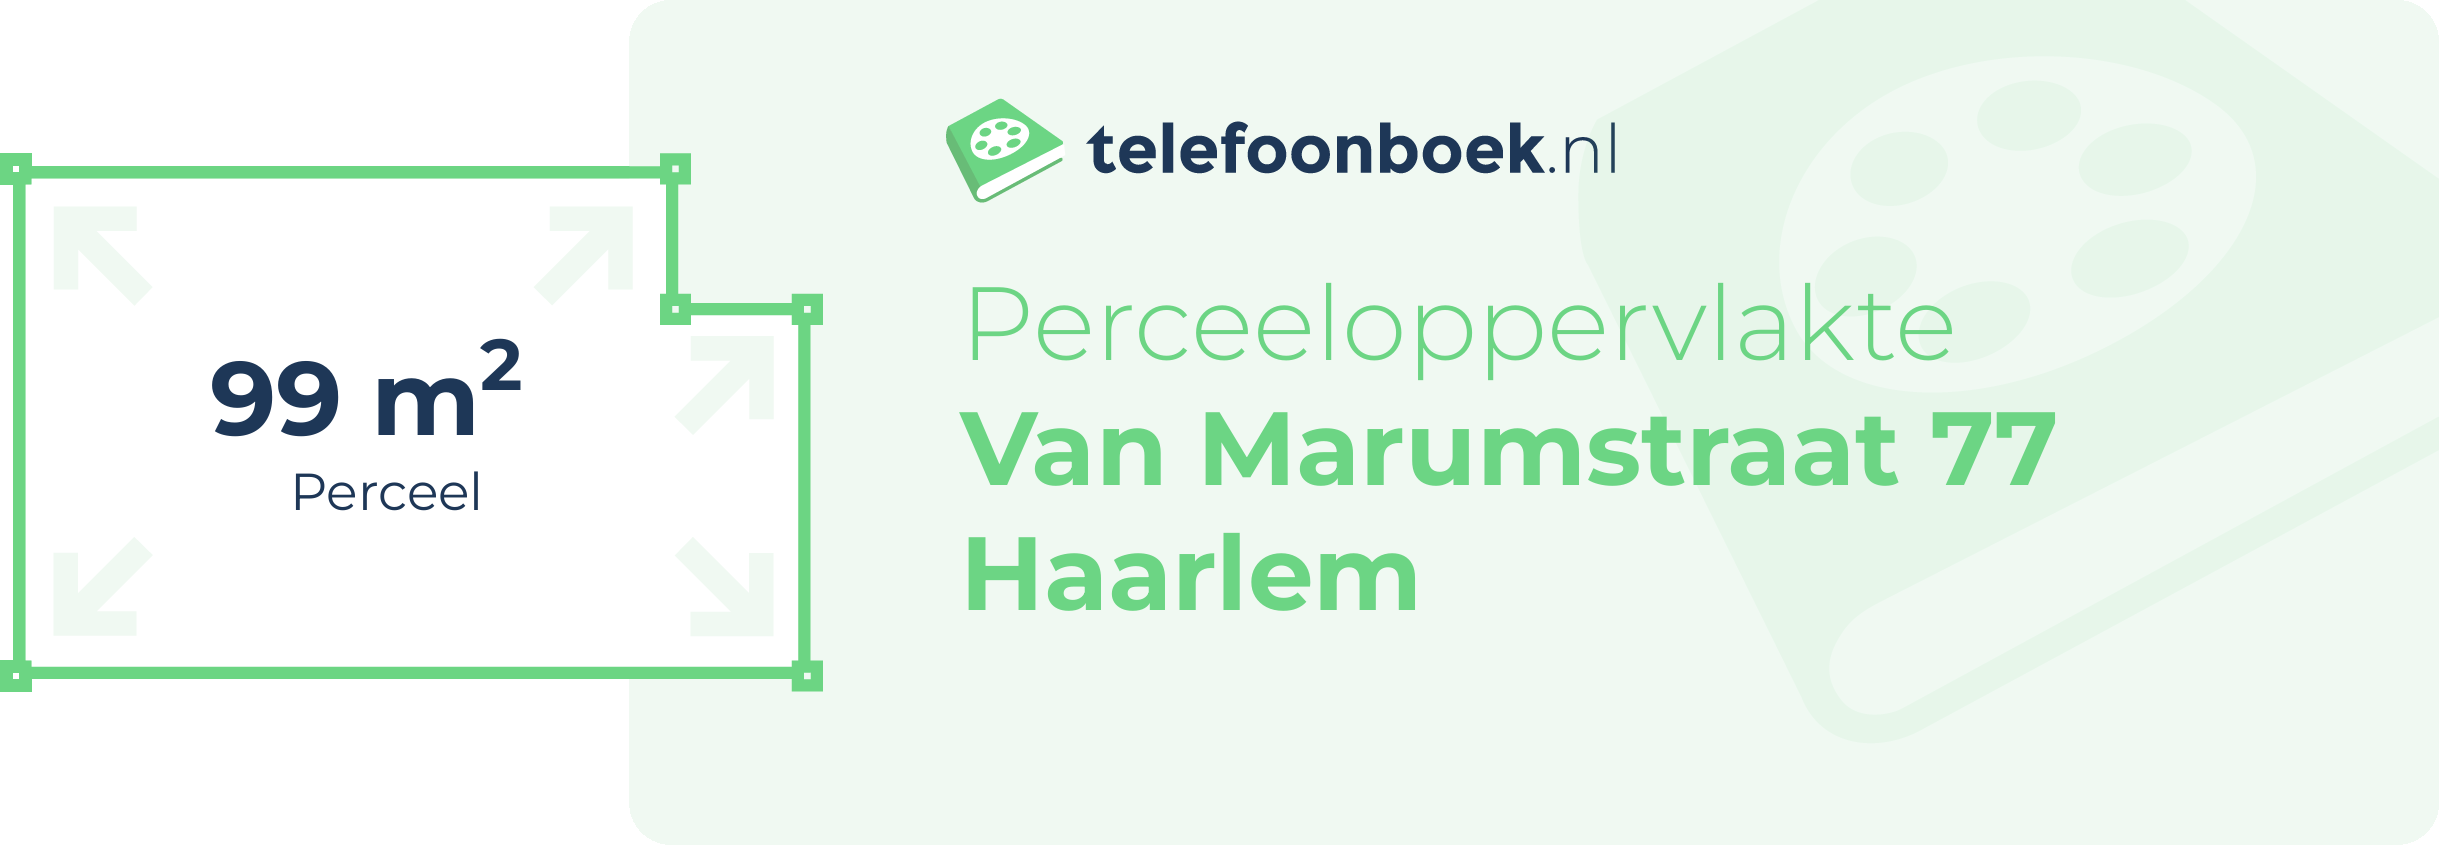 Perceeloppervlakte Van Marumstraat 77 Haarlem